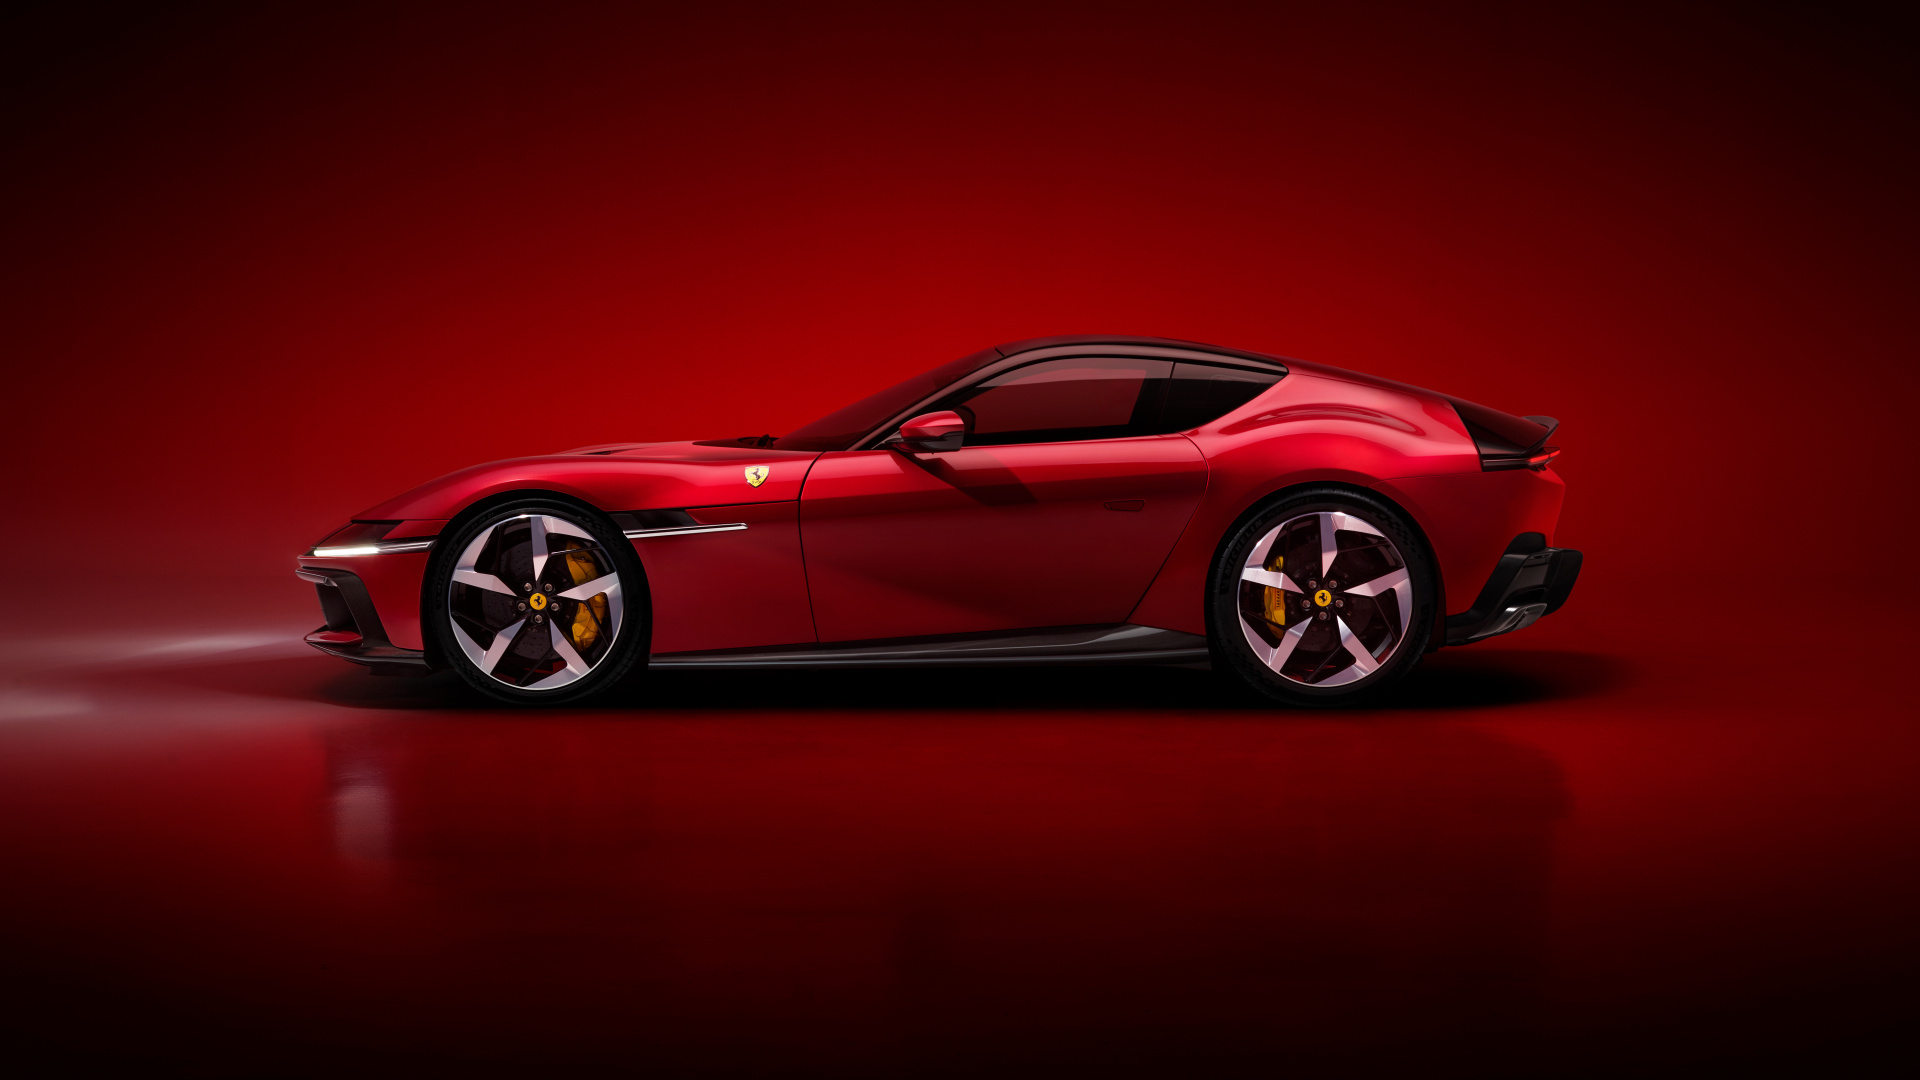 SMALL_New_Ferrari_V12_ext_03_red_media_81ecffa7-eb31-4015-ba4a-f0469fb2ee50